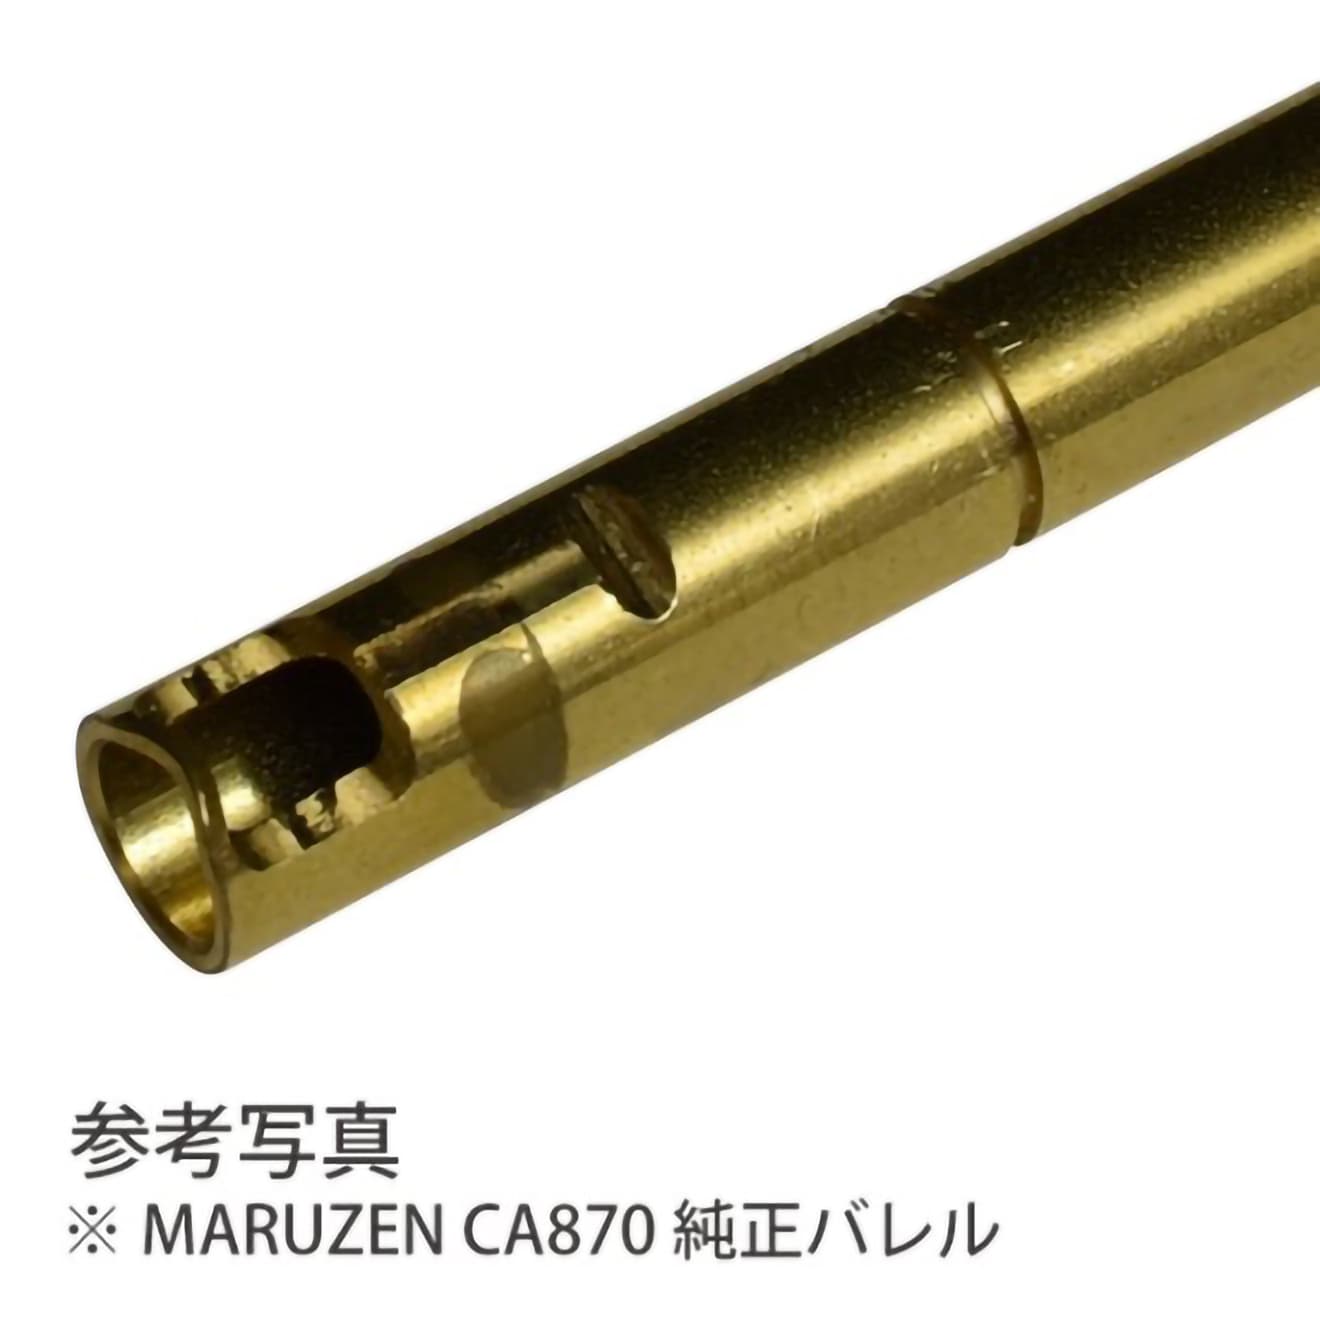 PDI 08シリーズ MARUZEN CA870 超精密ステンレスインナーバレル 230mm